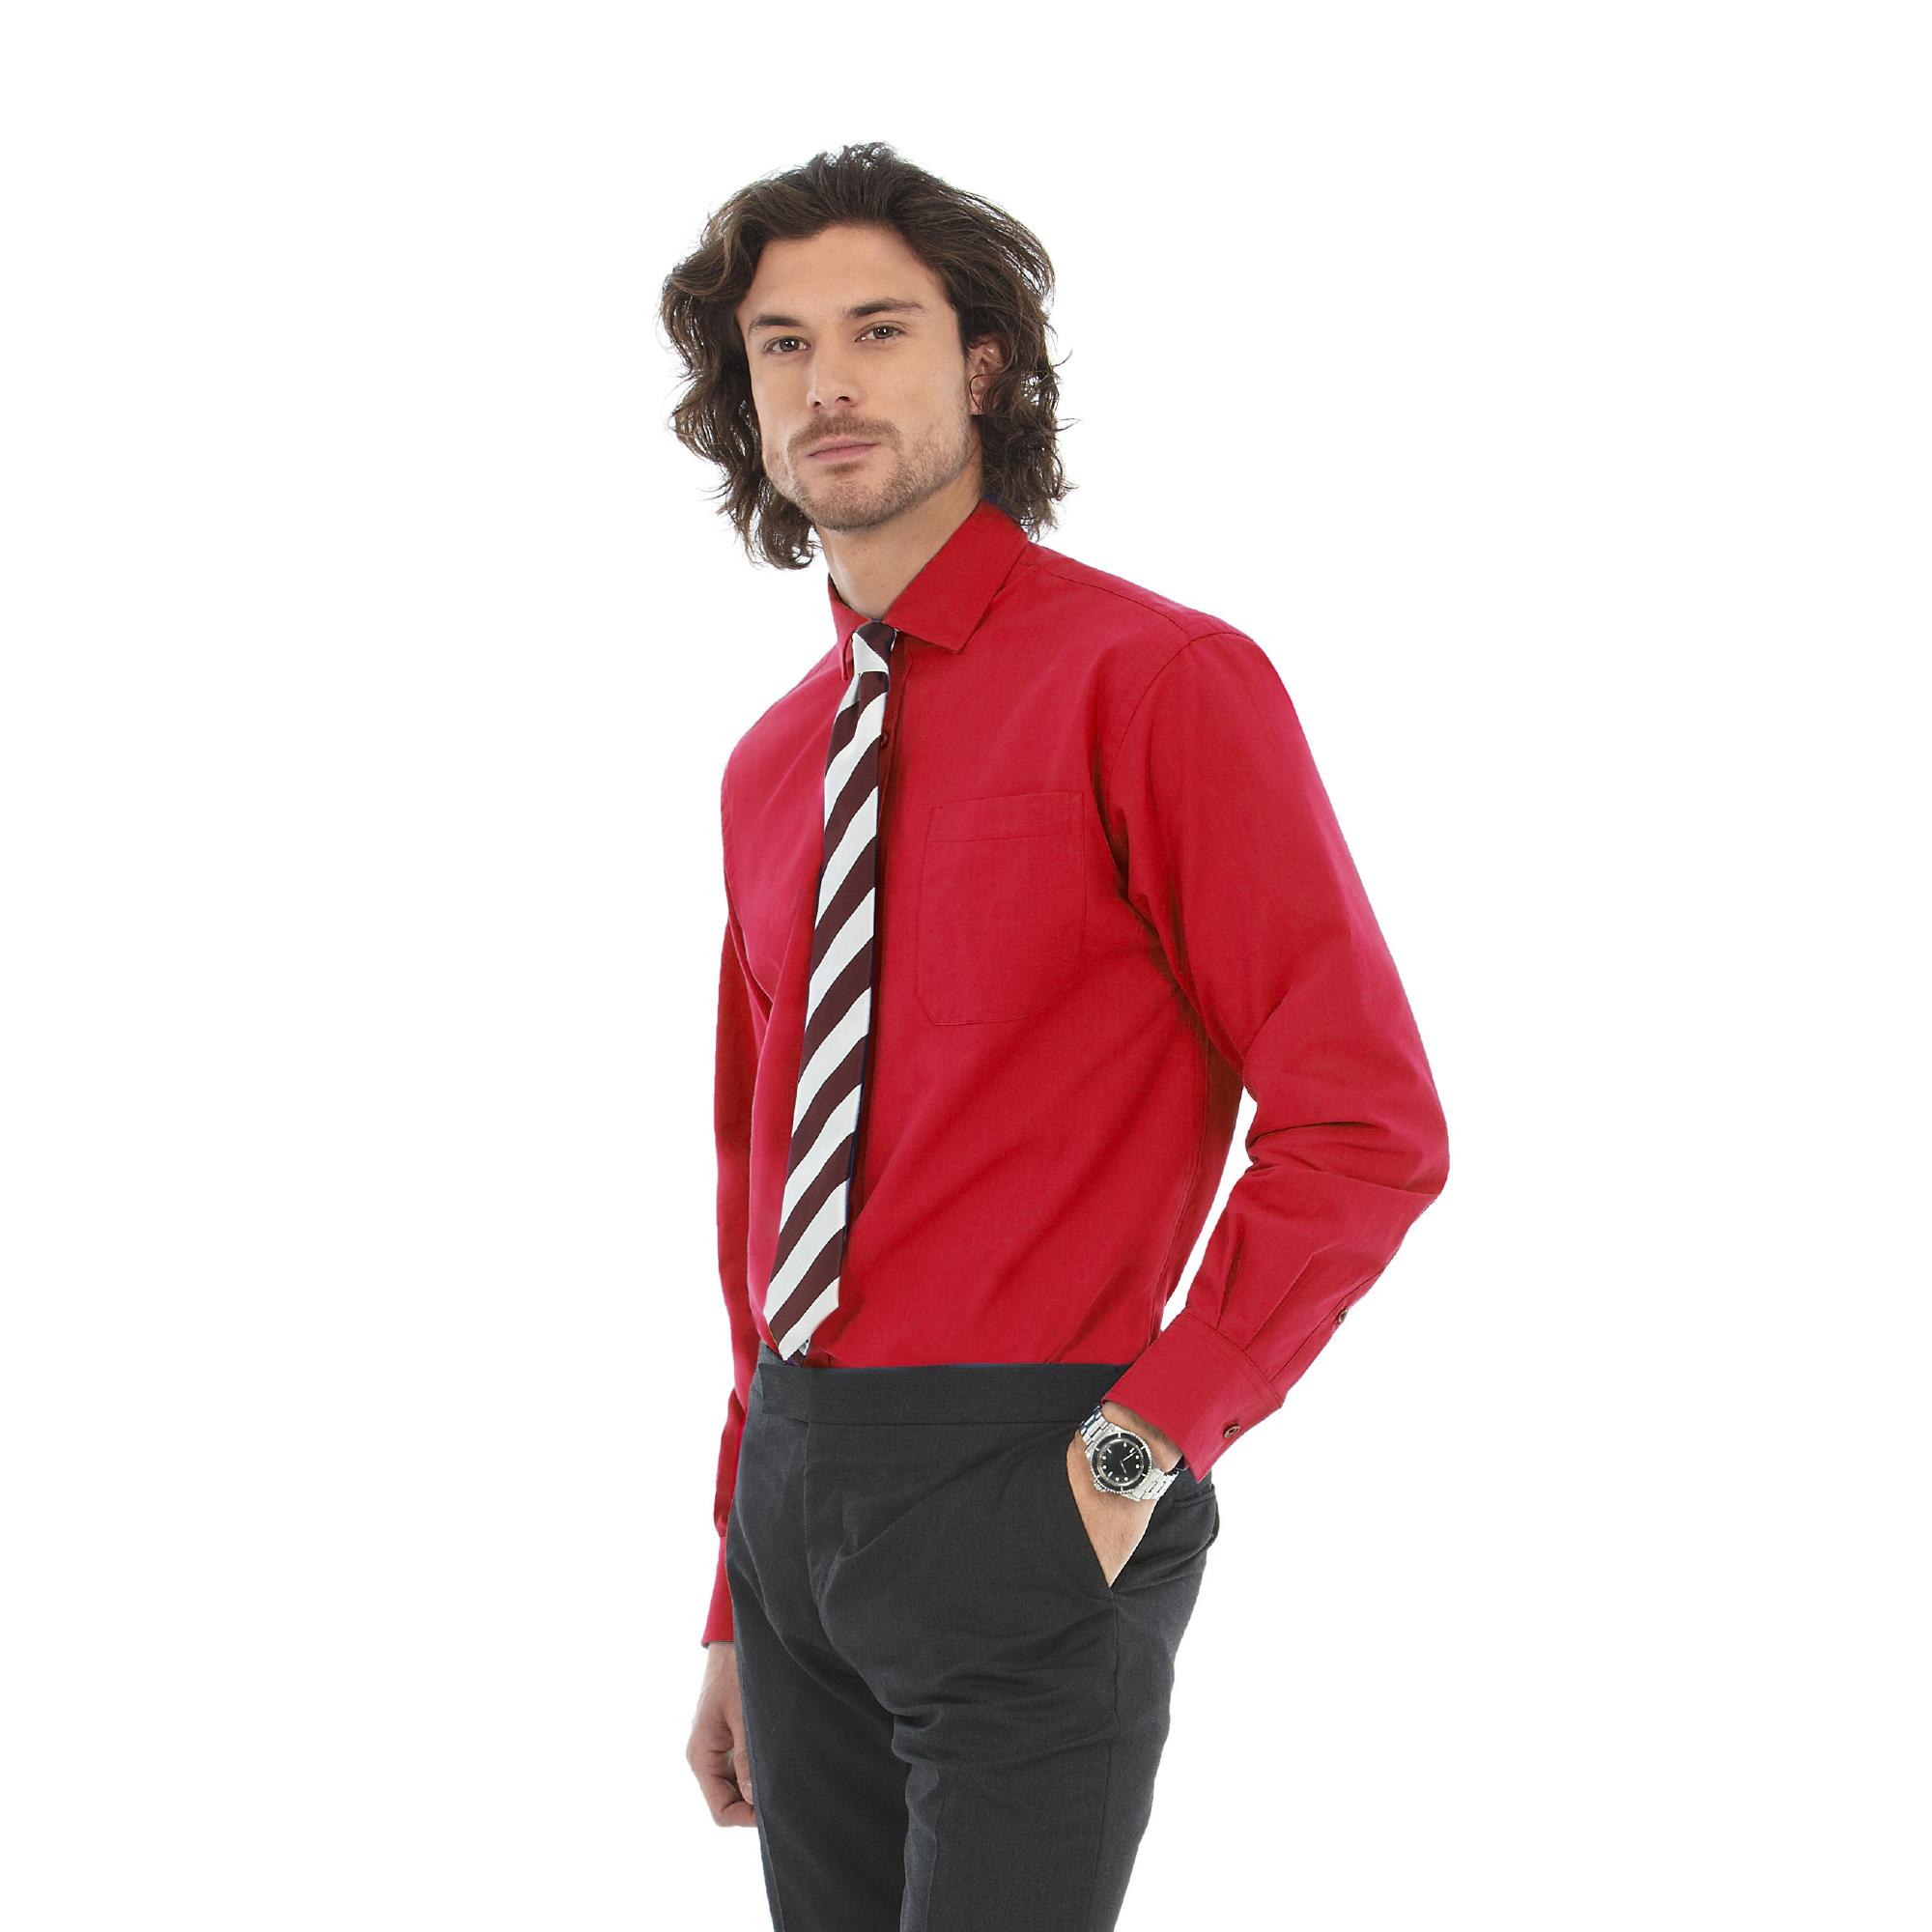 Рубашка мужская с длинным рукавом Heritage LSL/men, цвет темно-красный